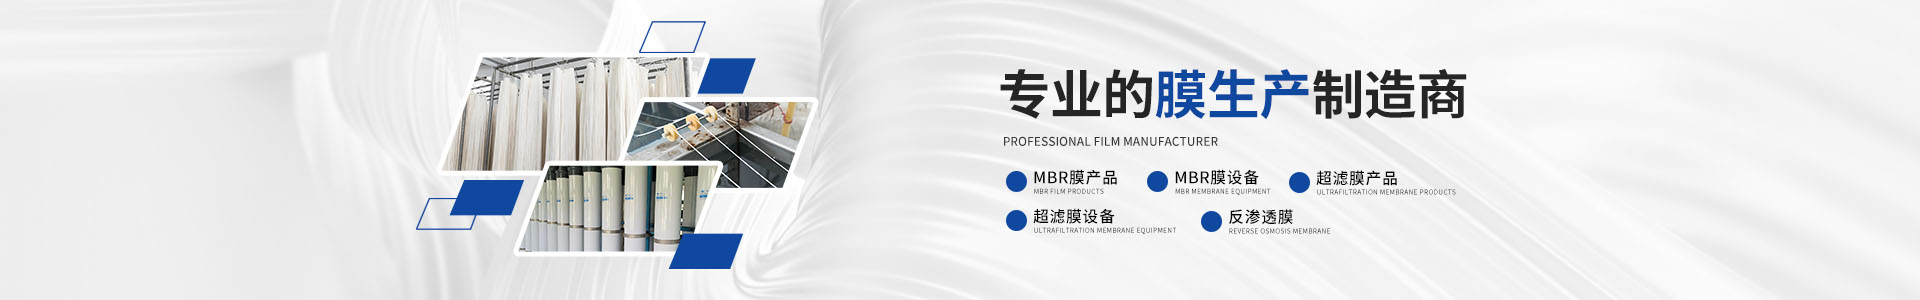 MBR膜一体化设备3-宁波胜科环保科技有限公司